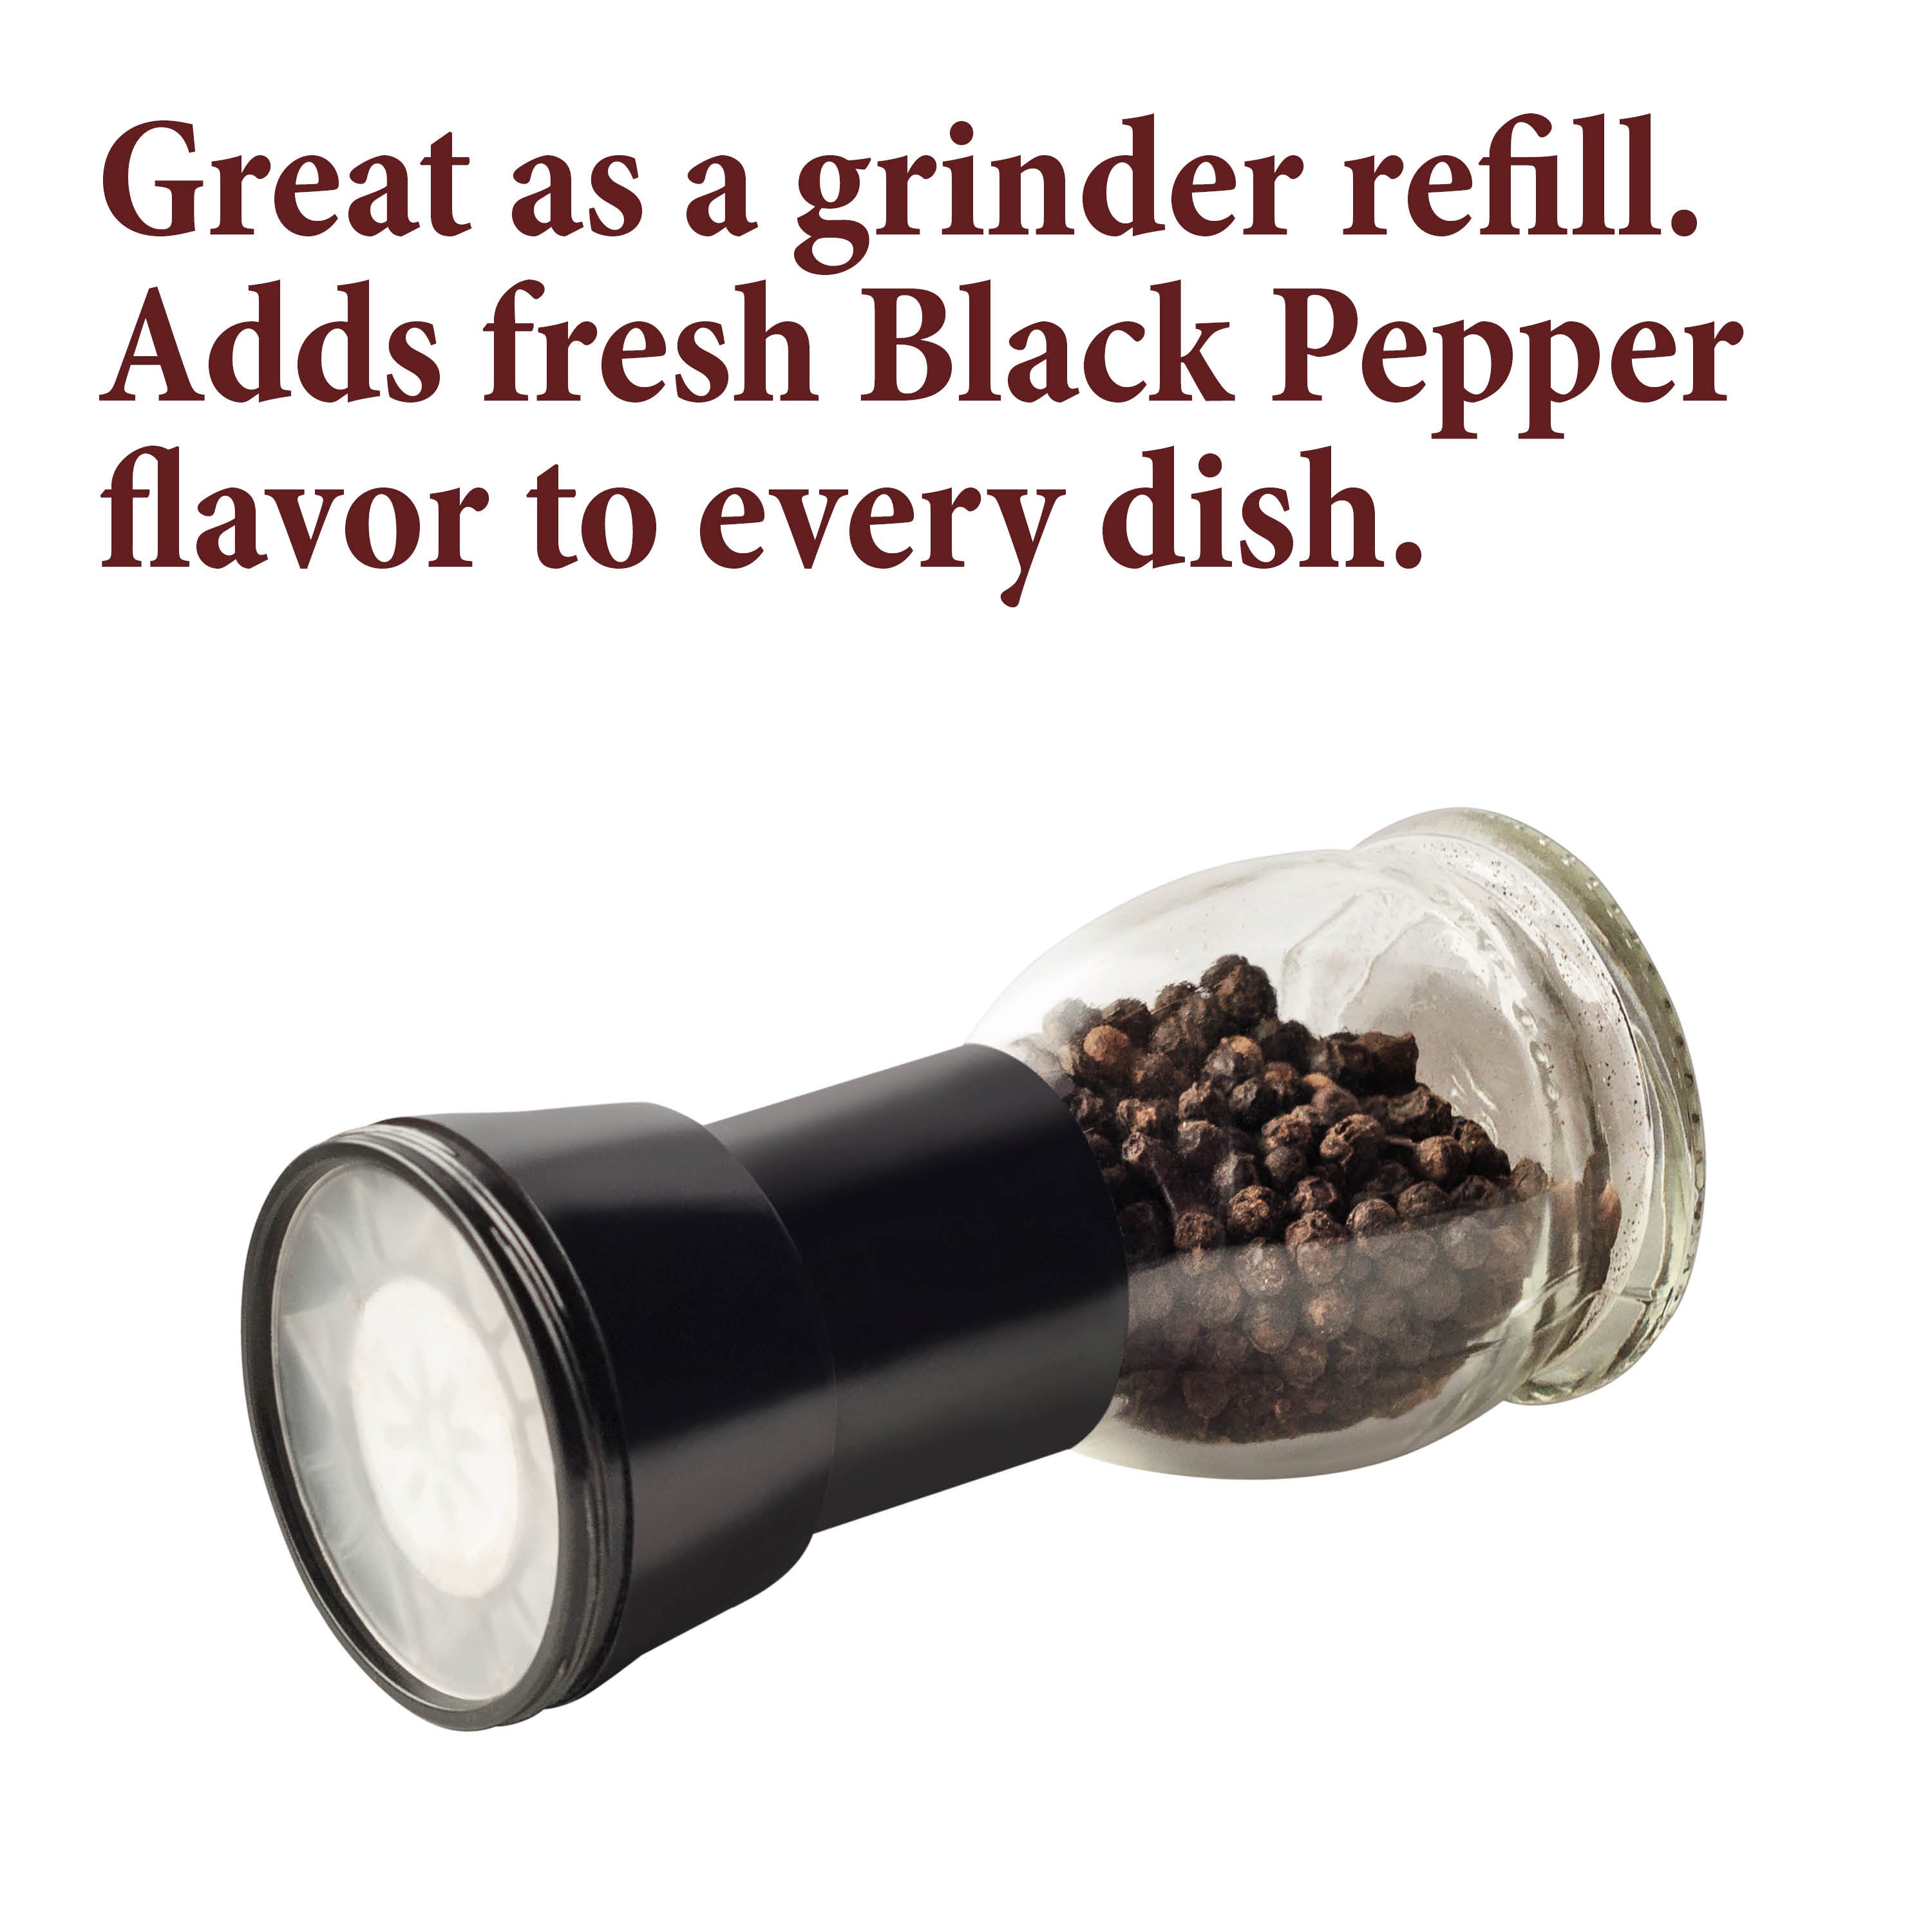 Nice! Black Peppercorn Grinder